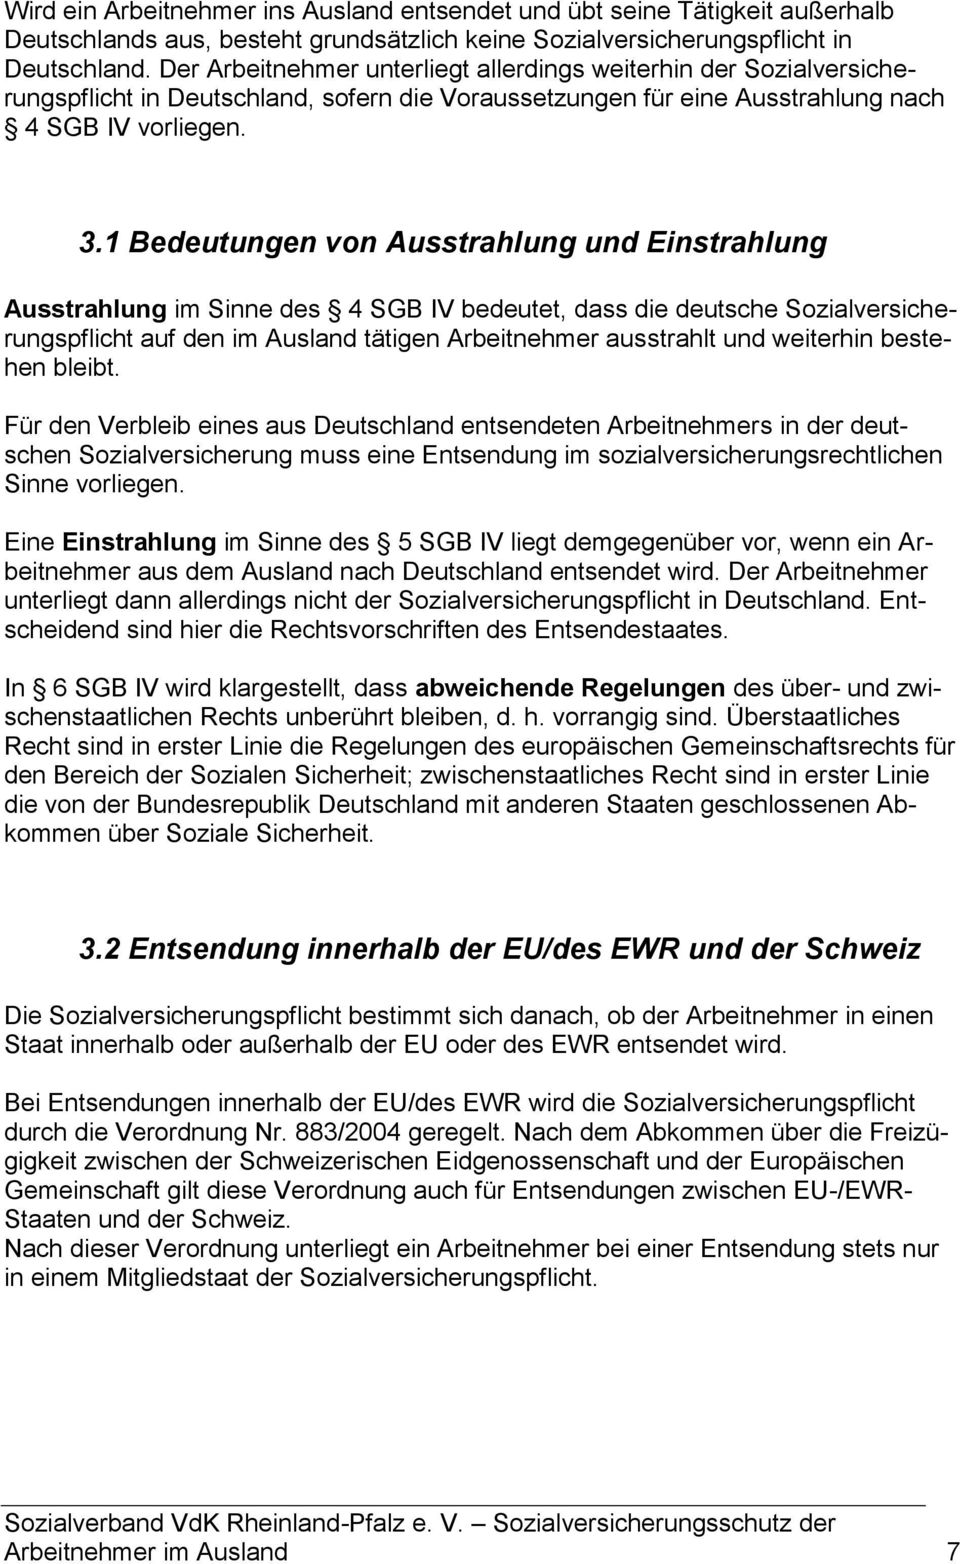 1 Bedeutungen von Ausstrahlung und Einstrahlung Ausstrahlung im Sinne des 4 SGB IV bedeutet, dass die deutsche Sozialversicherungspflicht auf den im Ausland tätigen Arbeitnehmer ausstrahlt und